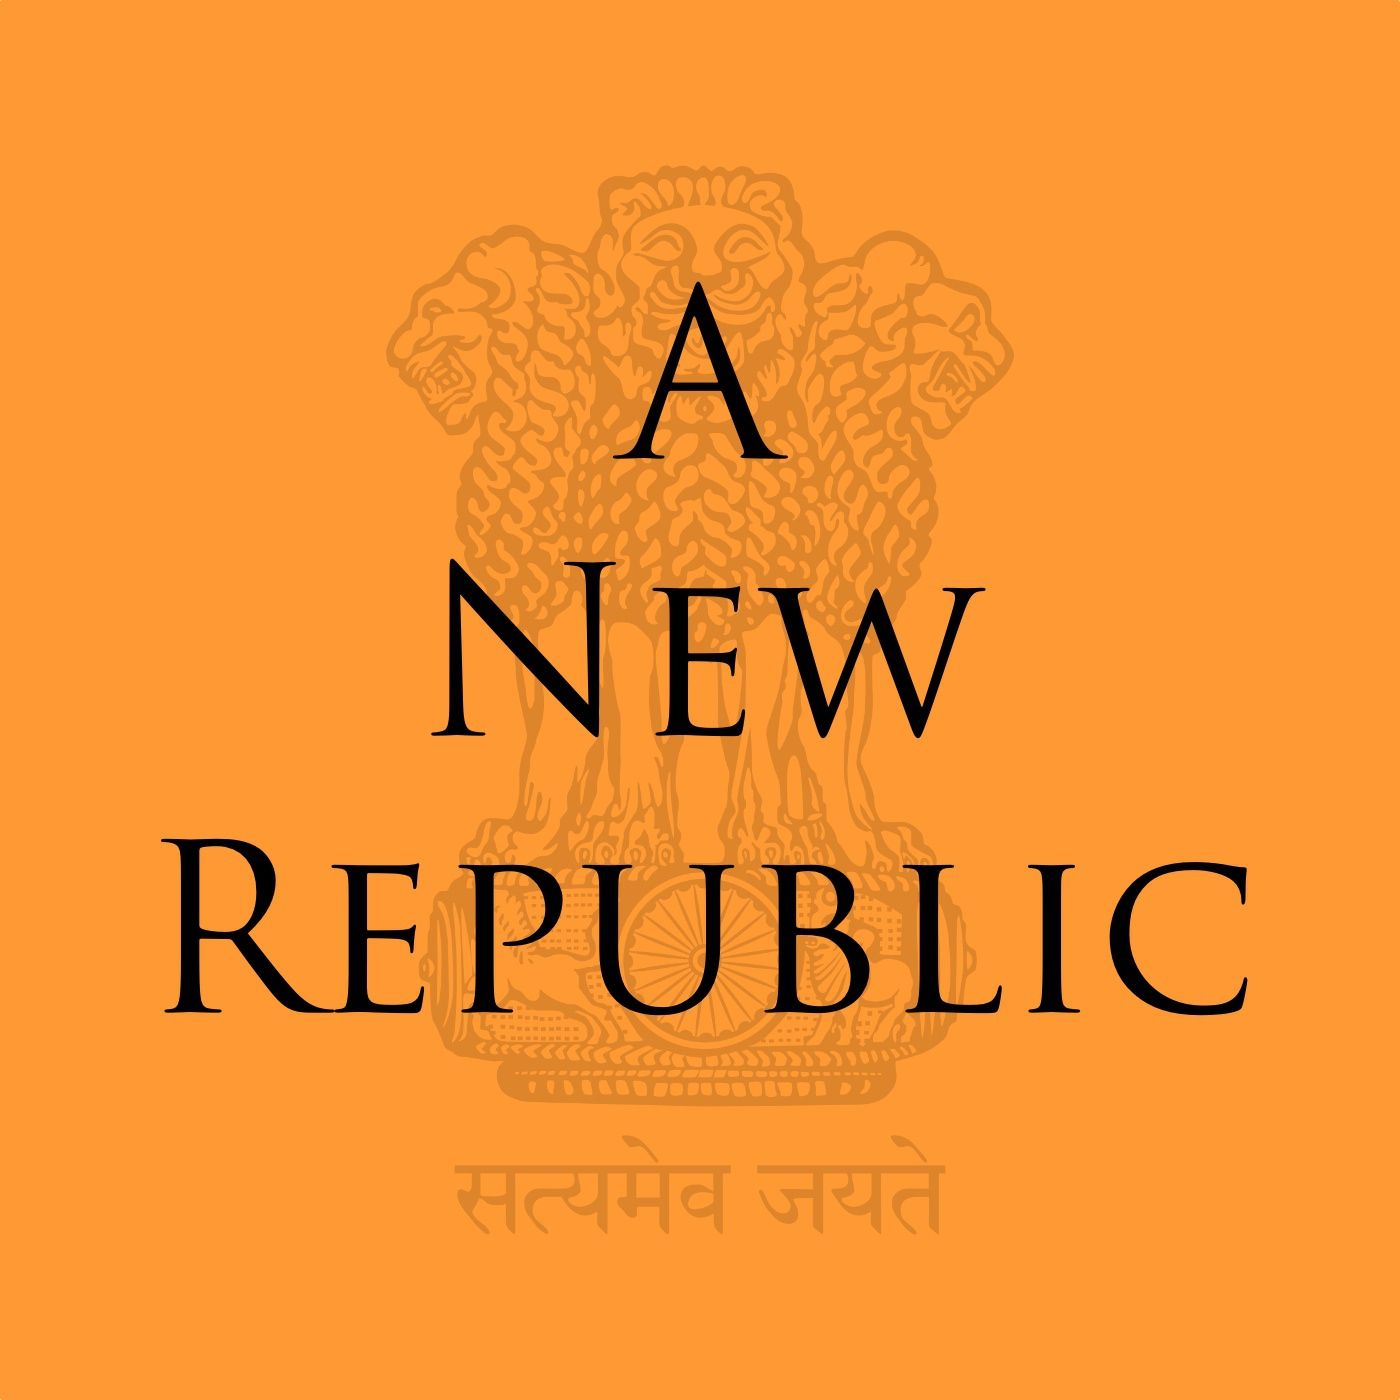 A New Republic - Episode 13: Gandhi In London